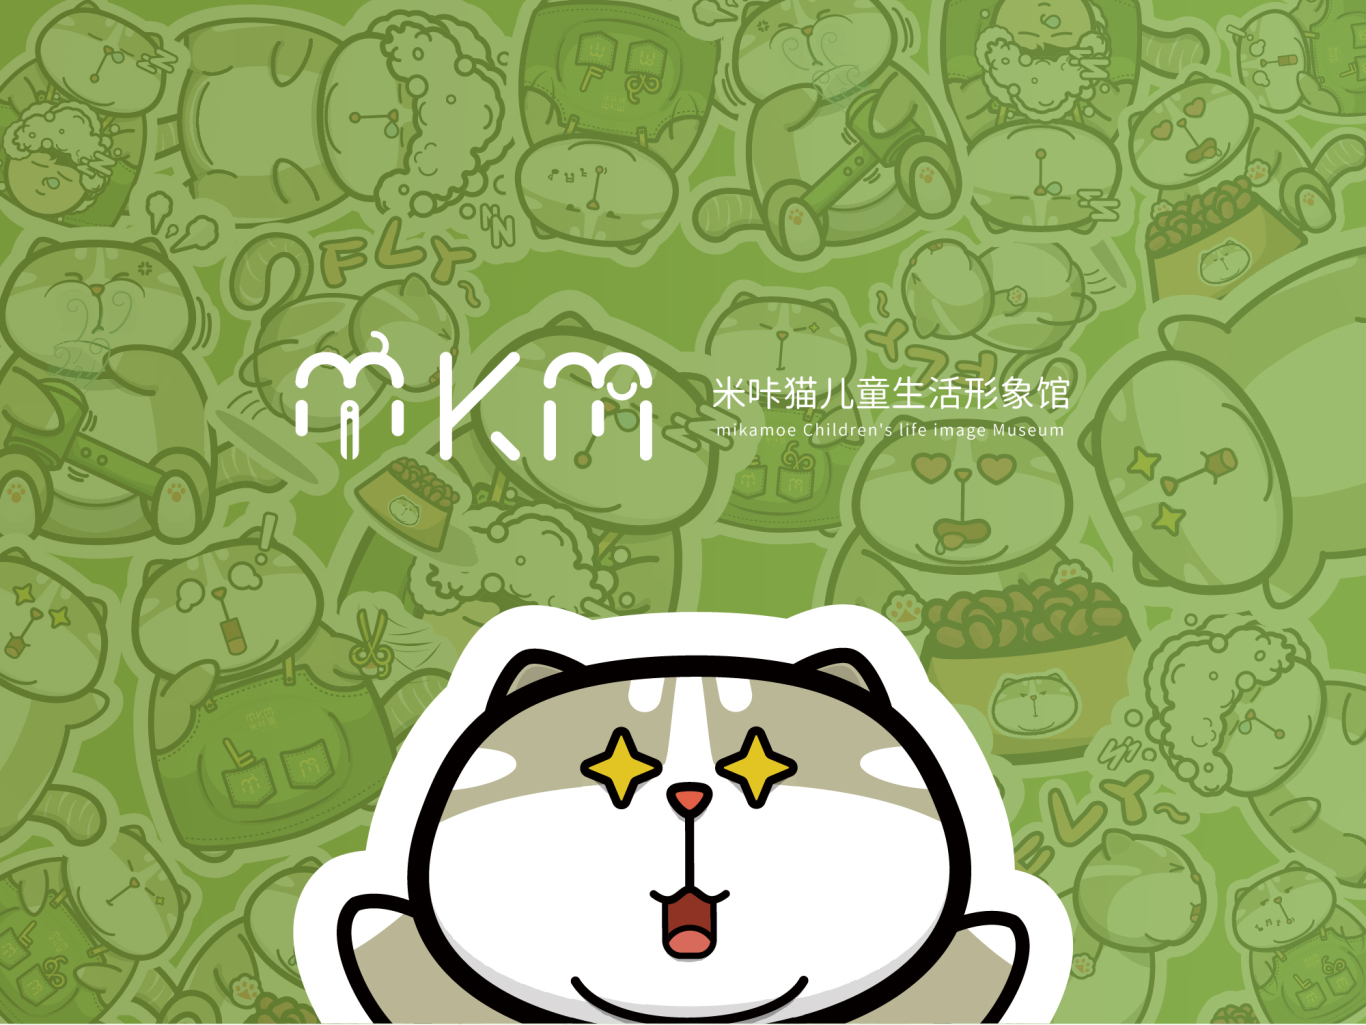 米咔貓兒童生活形象館圖10